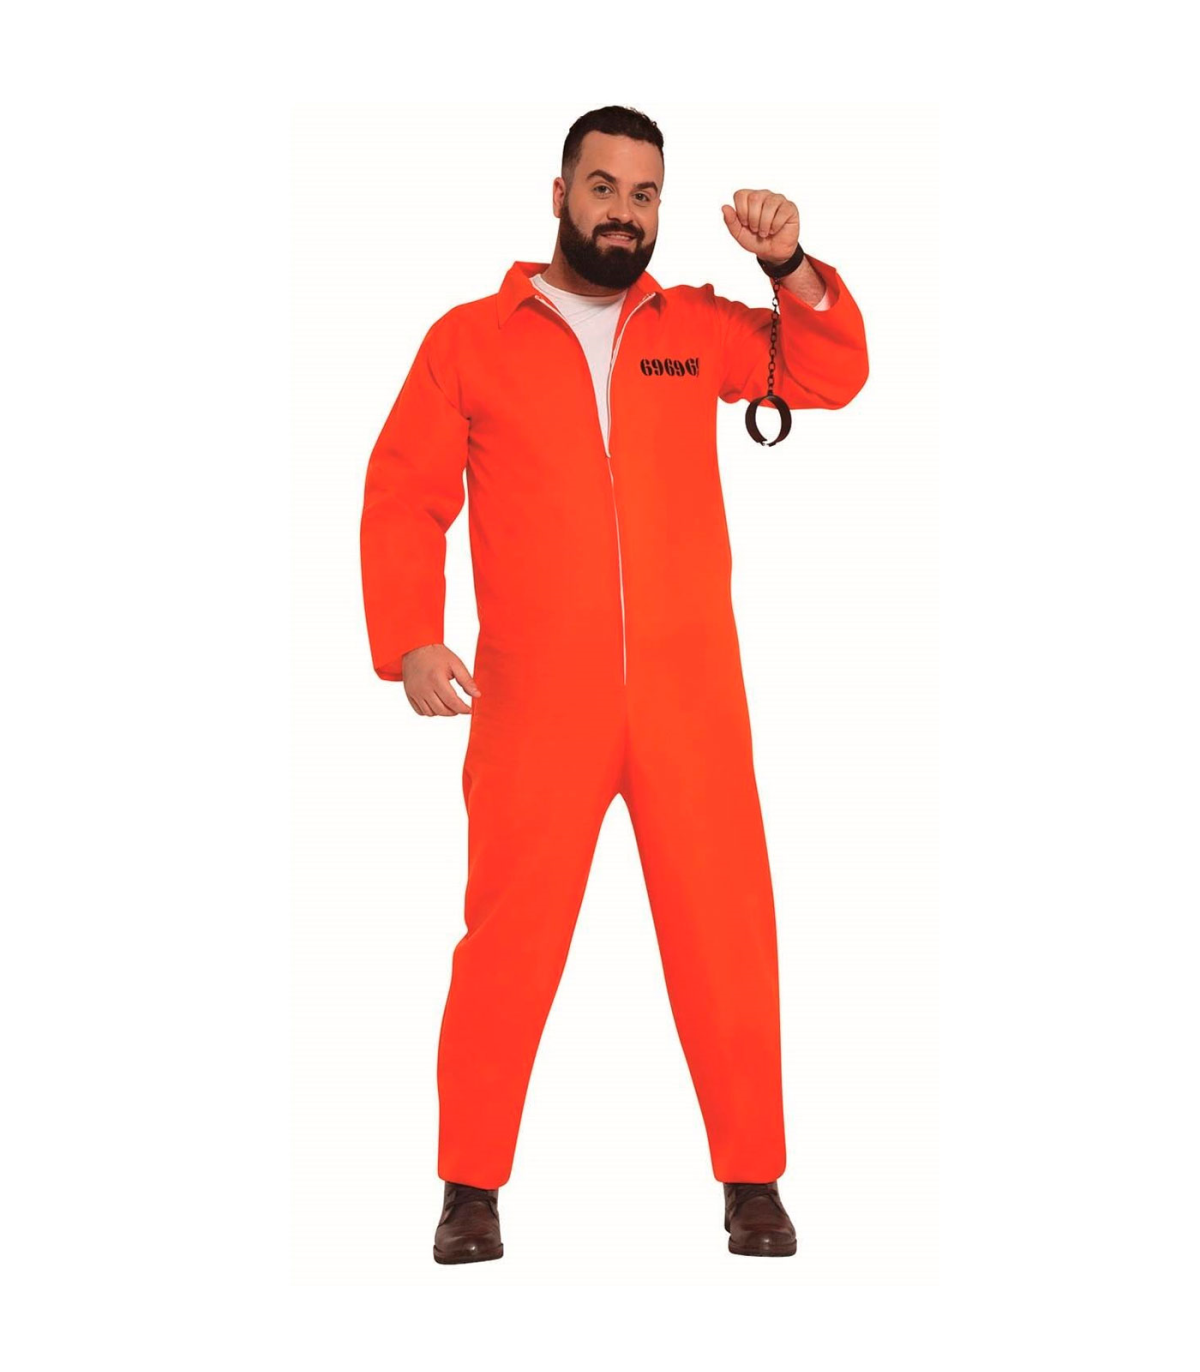 Tradineur - Disfraz de convicto para adulto, naranja, poliéster, incluye  mono, preso, presidiario, cárcel, atuendo de carnaval